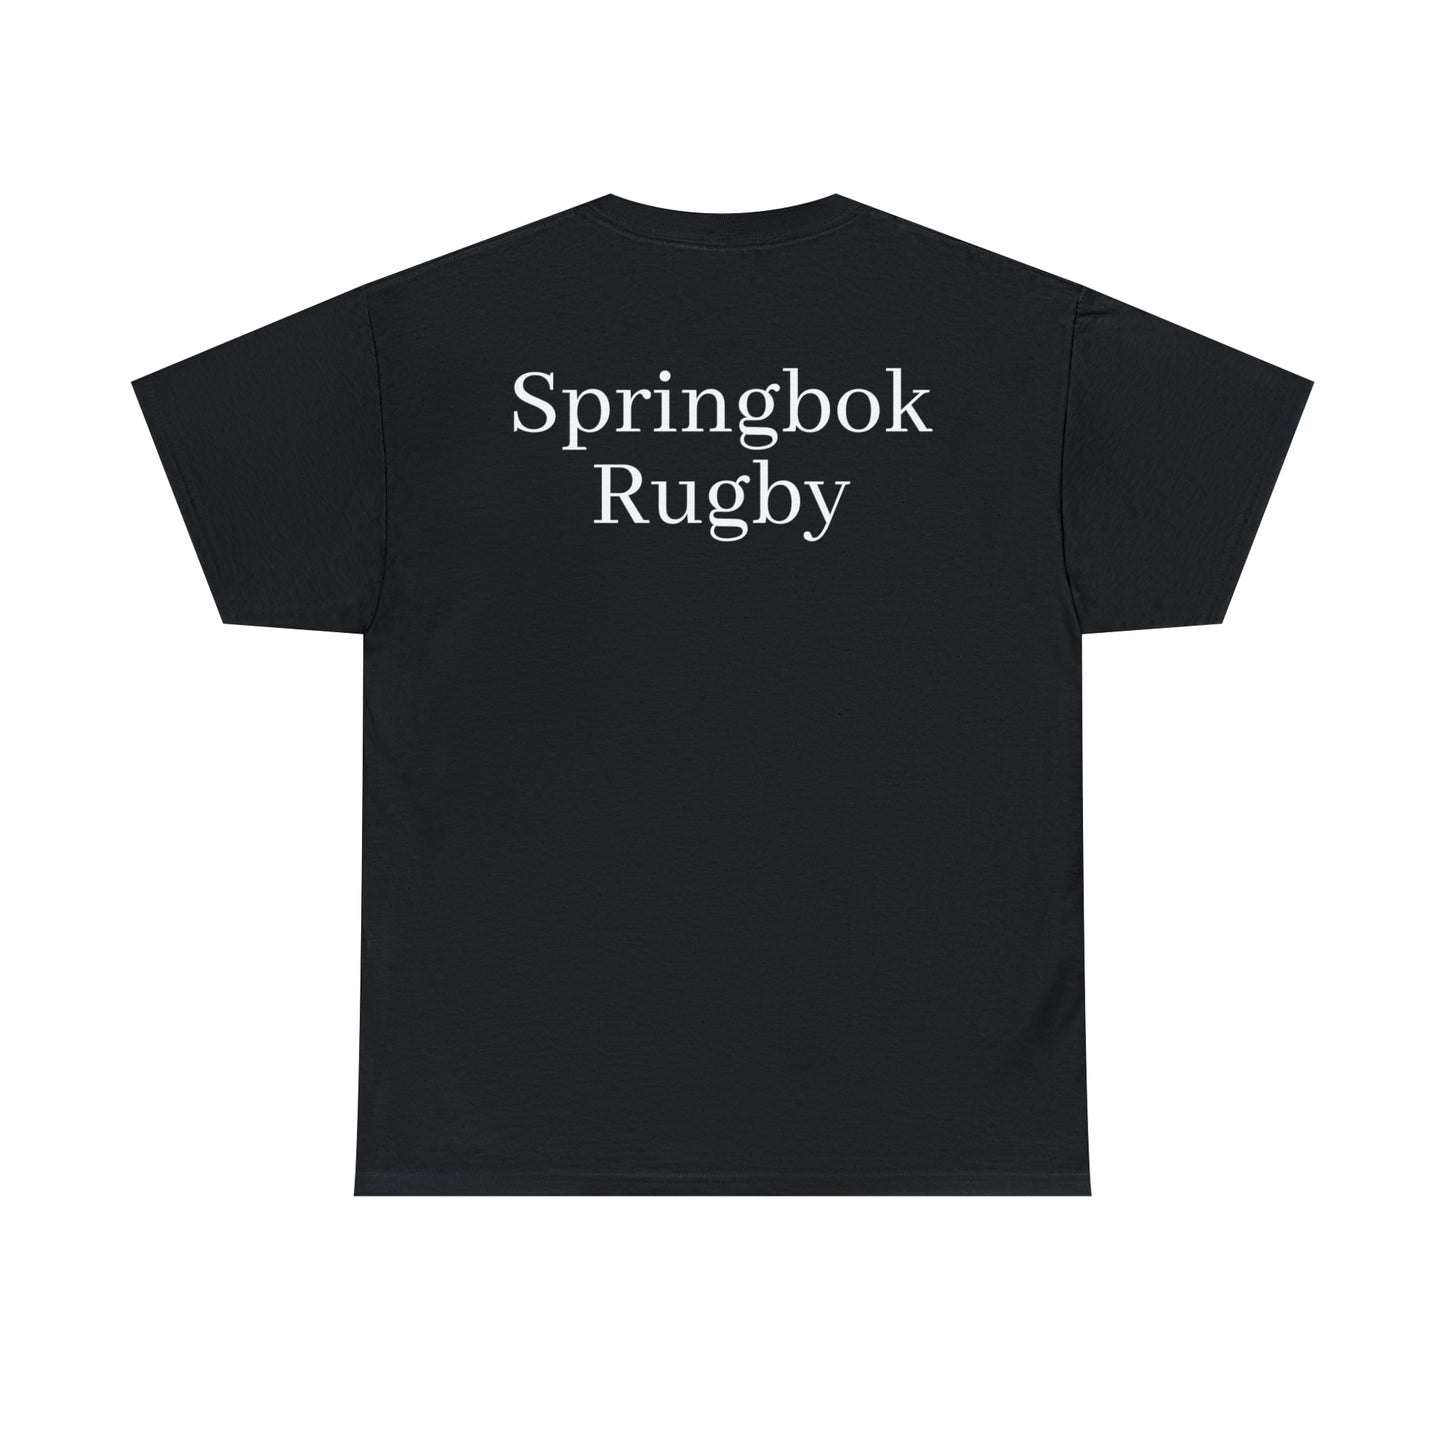 Springboks Celebrating - dark shirts